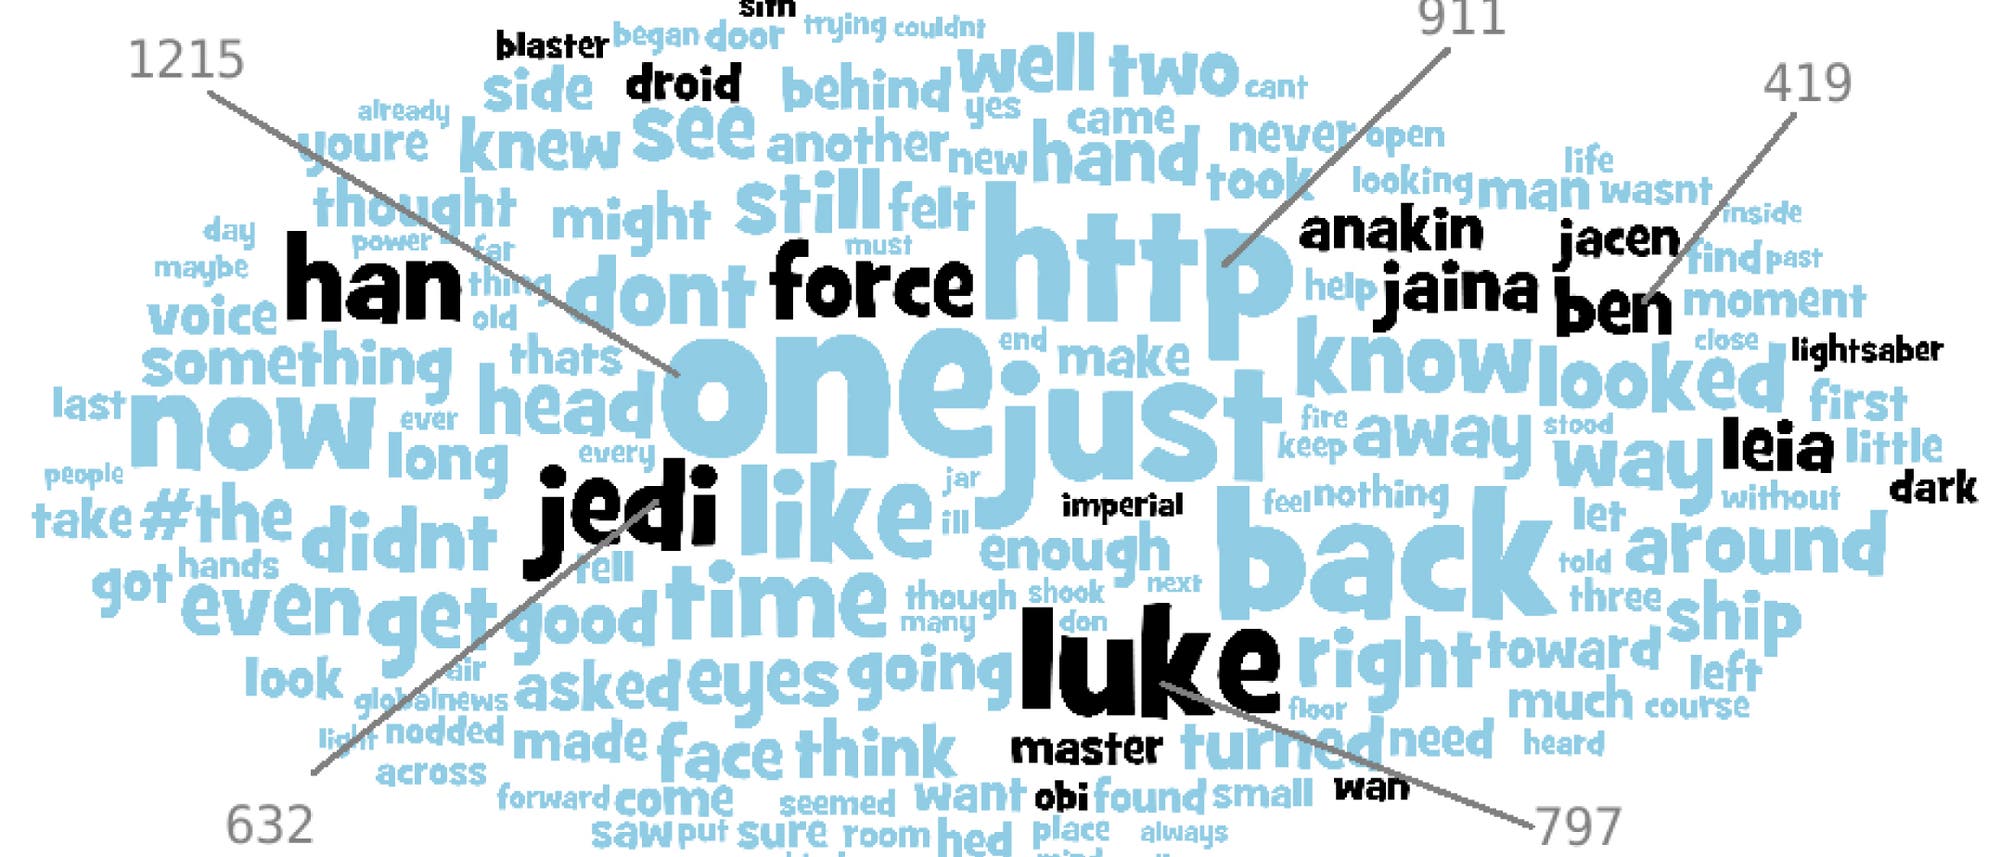 Die oft verwendeten Begriffe realer Nutzer unterscheiden sich von denen des Botnetzes (schwarze Worte sind typisch für die Star Wars Saga).